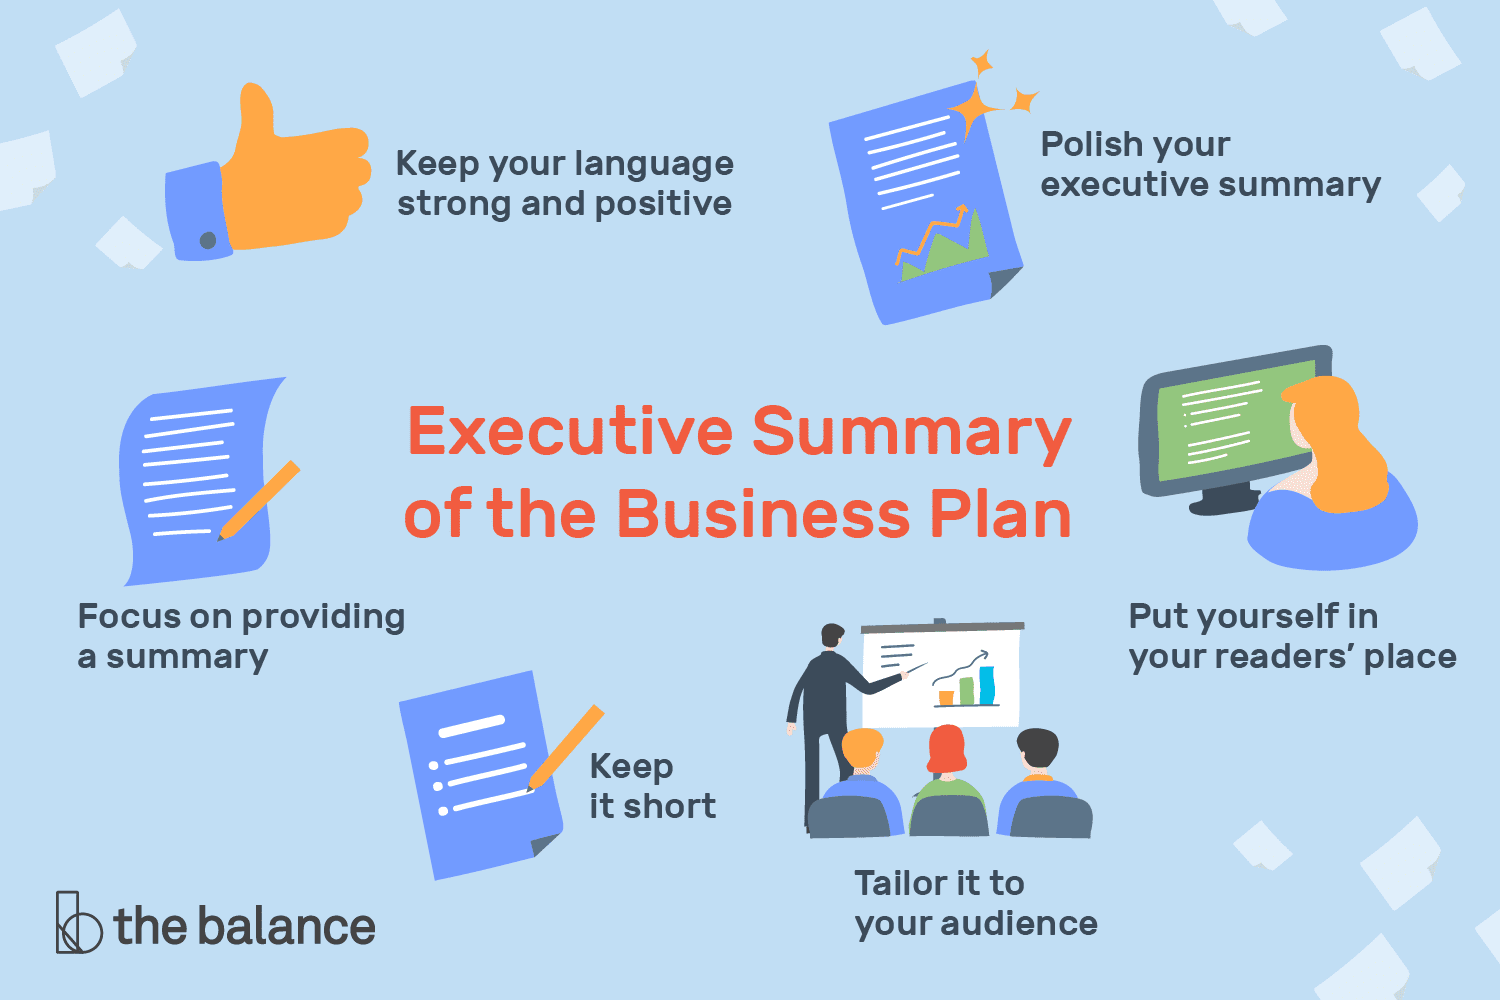 executive summary of the business plan 2948012 v4 5b48e70a46e0fb0037662ae7